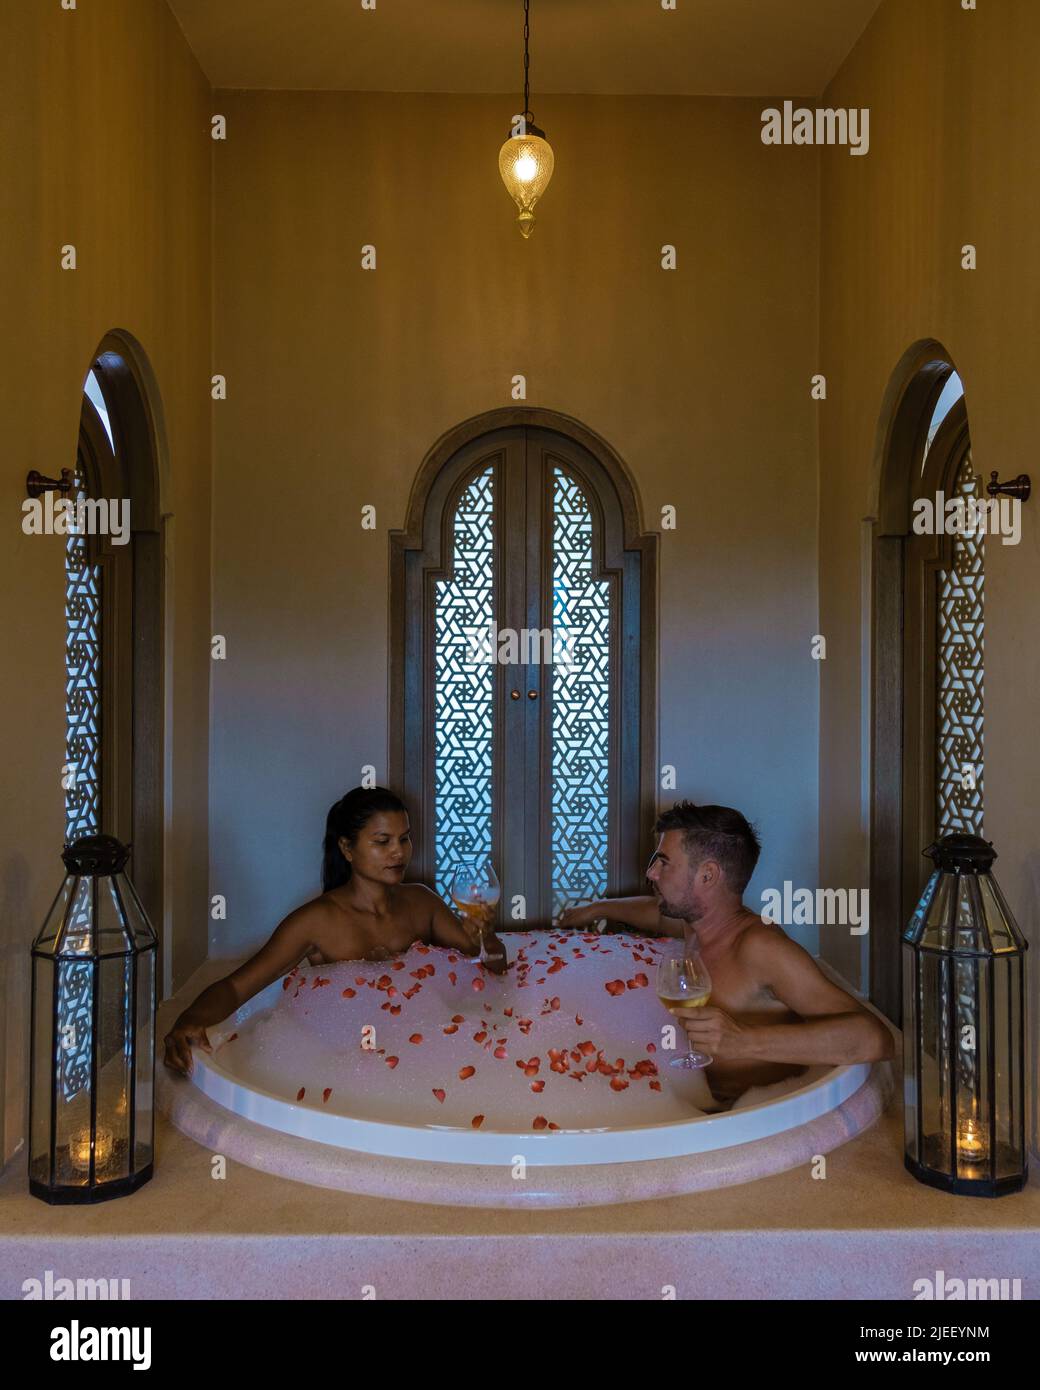 romantique baignoire avec pétales de rose, vacances de luxe dans le jacuzzi, couple hommes et femme dans la baignoire d'un complexe de luxe pendant les vacances Banque D'Images